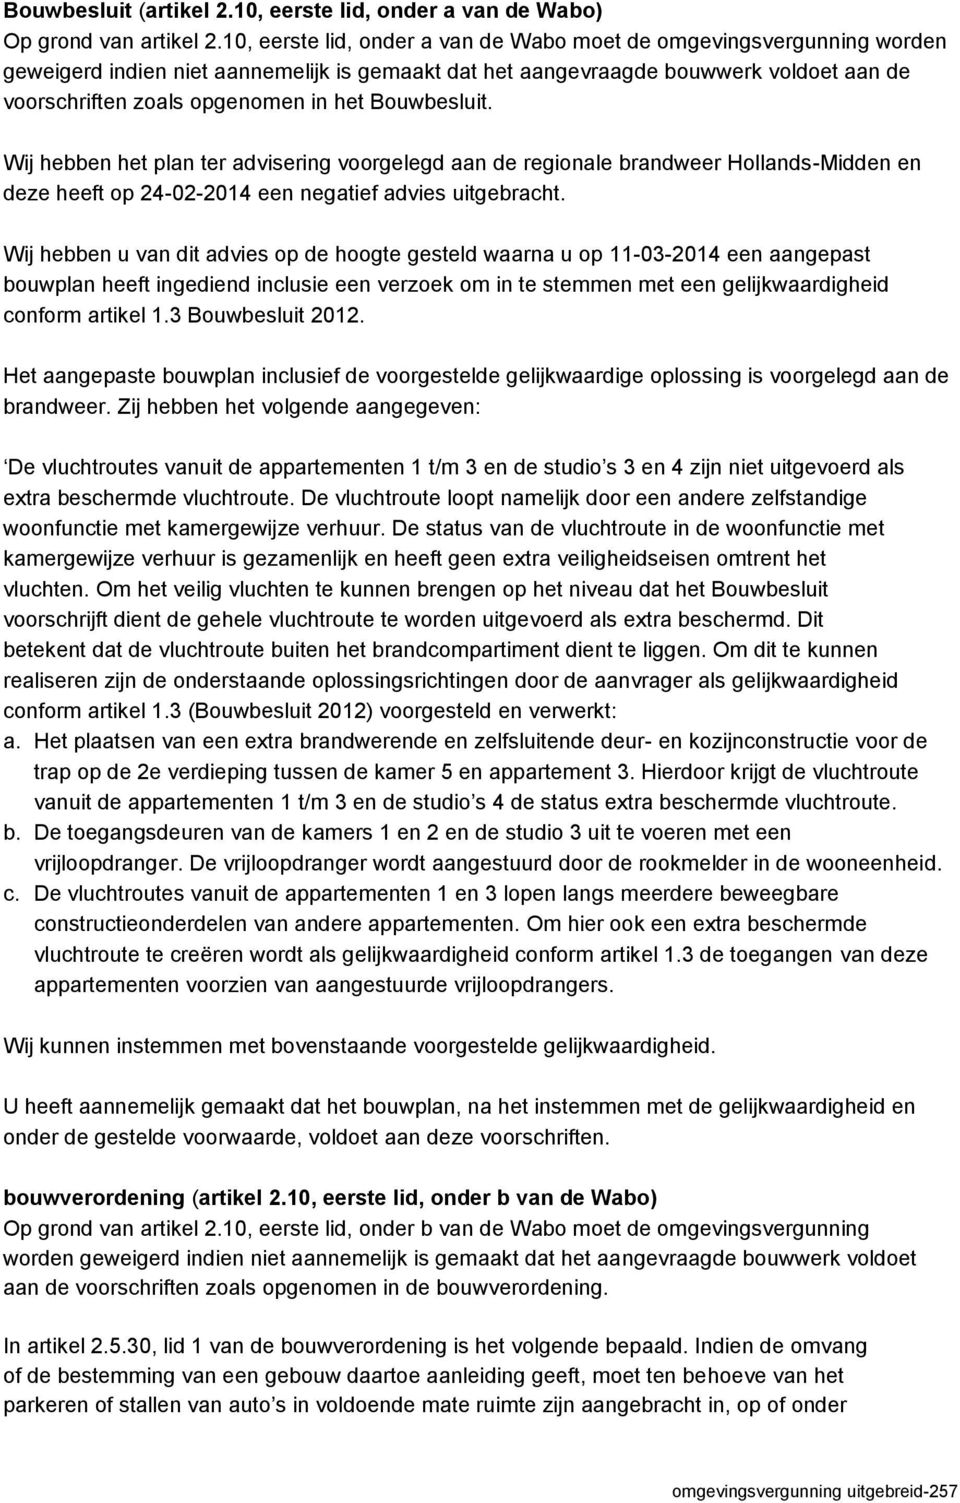 Bouwbesluit. Wij hebben het plan ter advisering voorgelegd aan de regionale brandweer Hollands-Midden en deze heeft op 24-02-2014 een negatief advies uitgebracht.